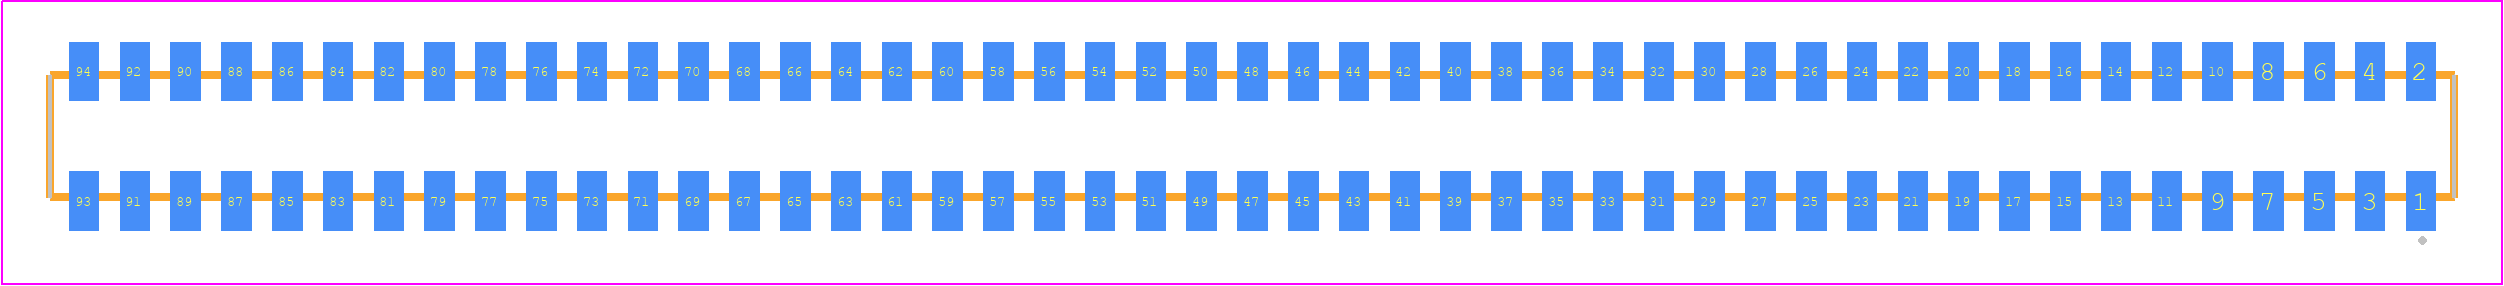 CLP-147-02-STL-D-K - SAMTEC PCB footprint - Other - Other - CLP-147-02-XXX-D-K